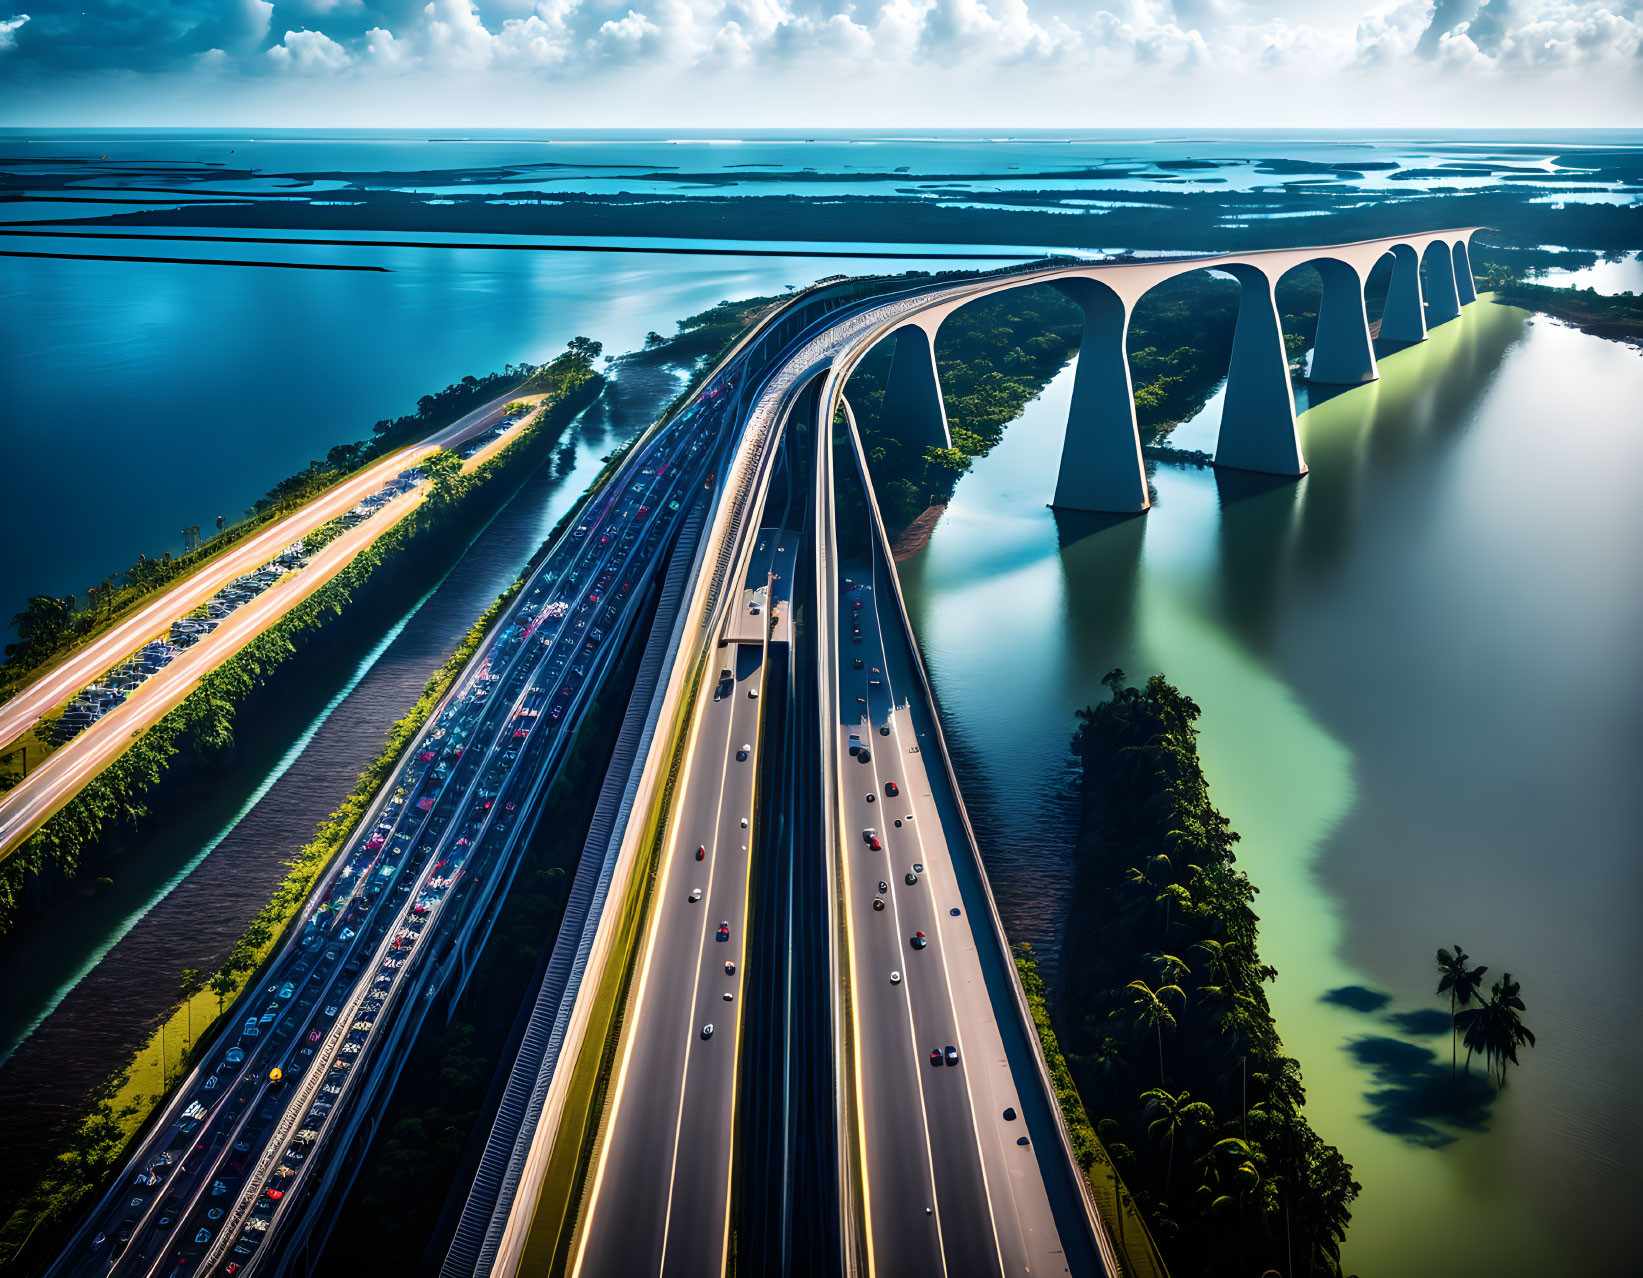 Aerial View of Multi-Lane Highway & Bridge Over Water